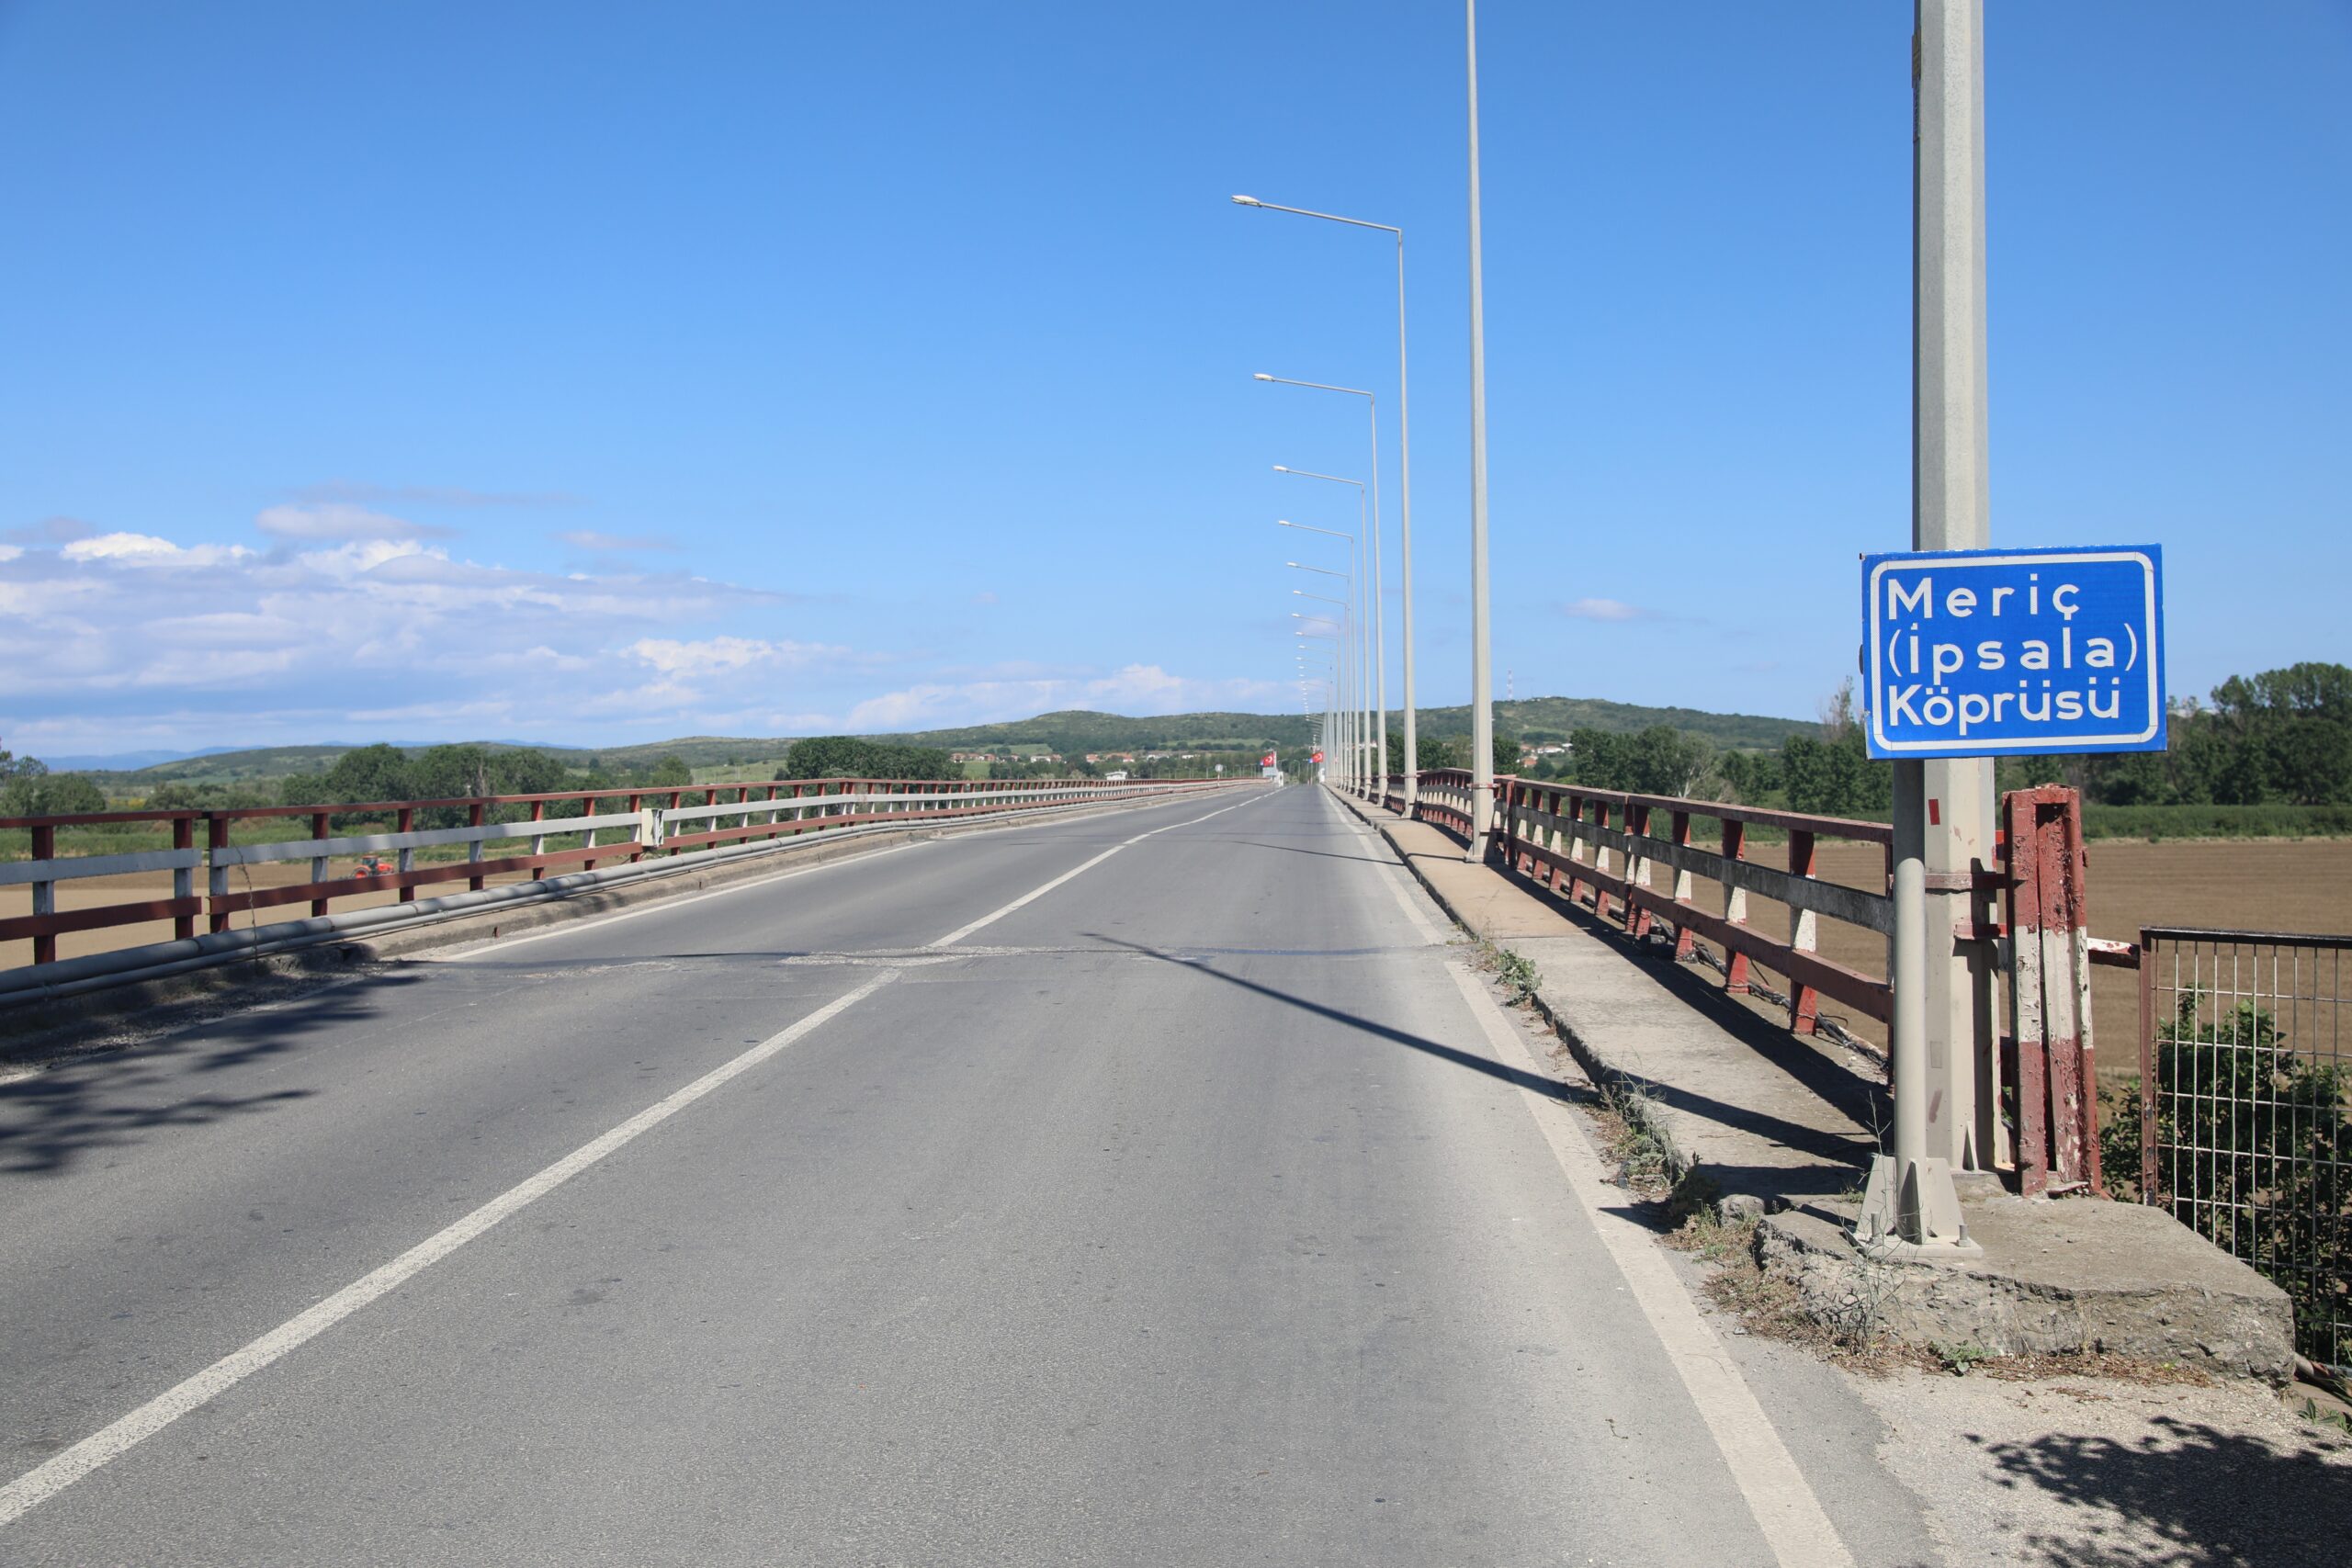 Türkiye ve Yunanistan sınır kapıları arasındaki yeni köprünün inşasına bu yıl başlanacak – BRTK